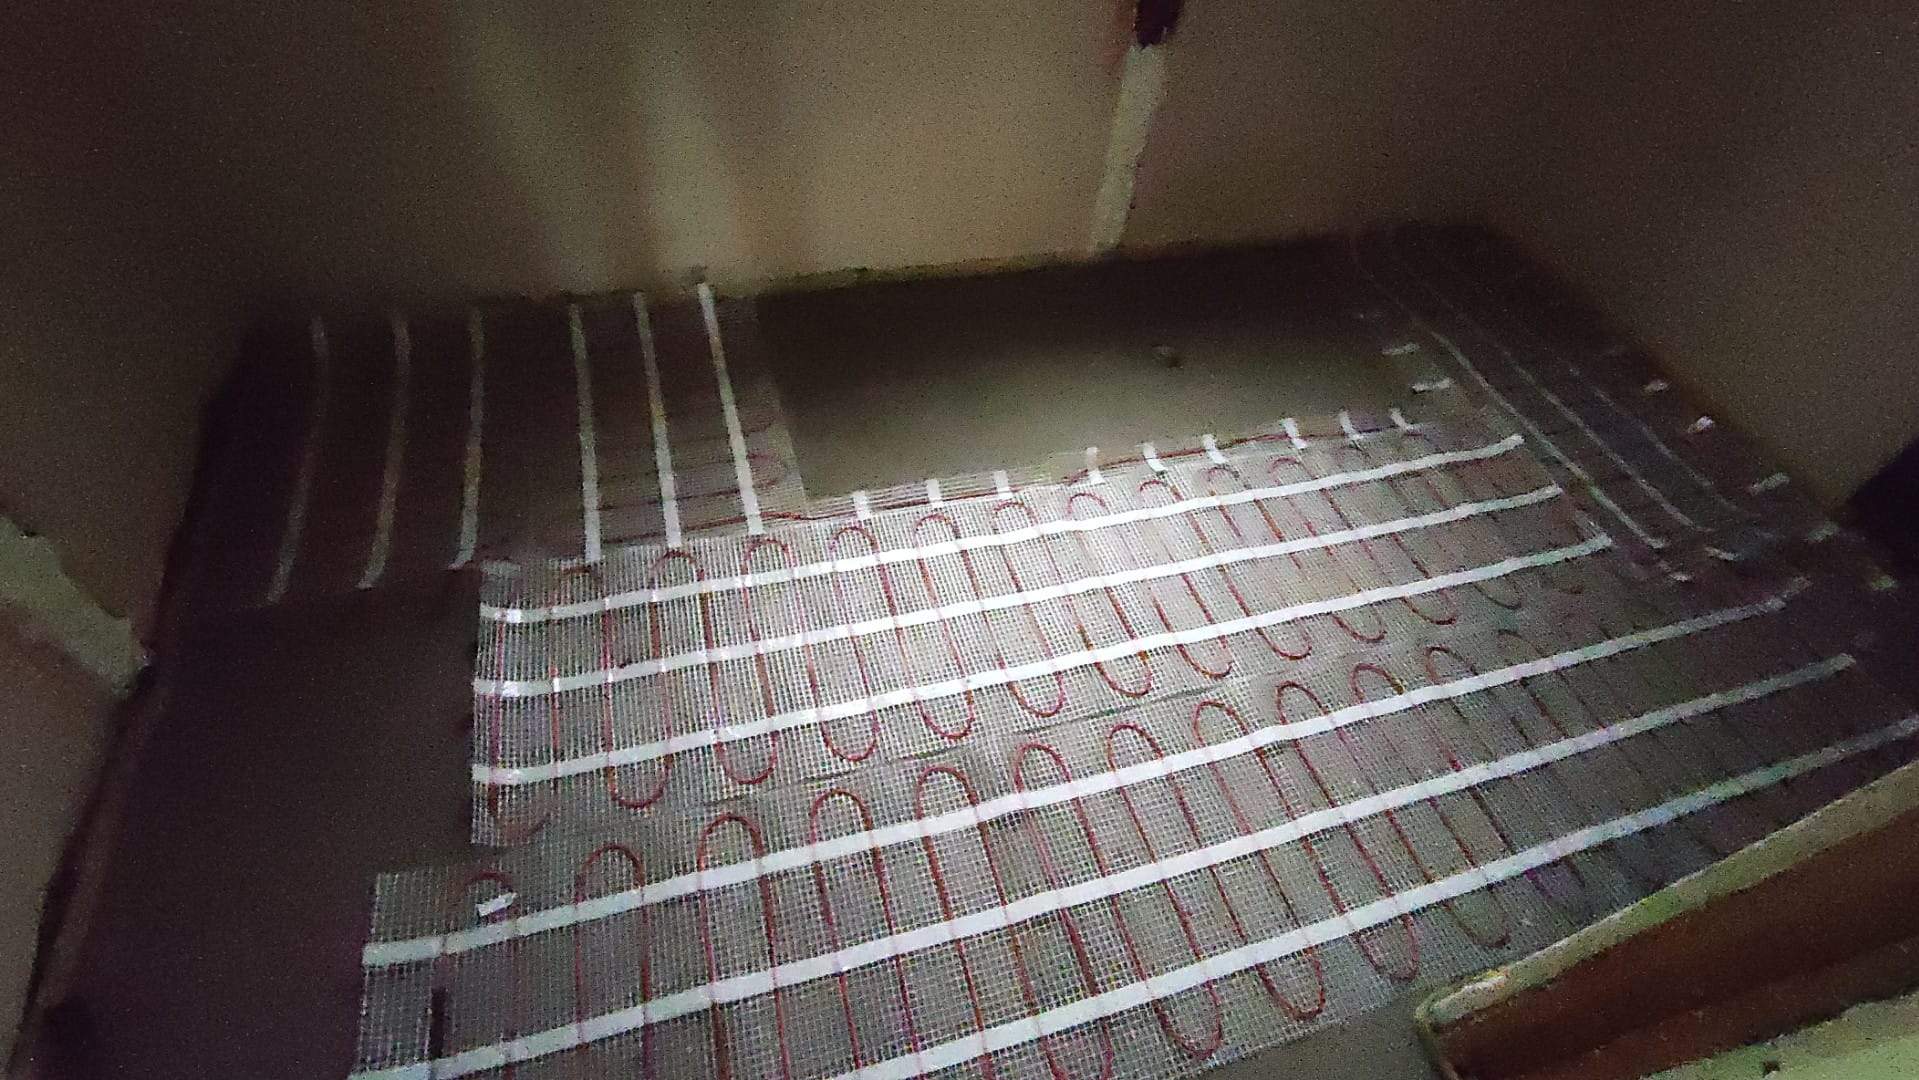 Ulozenie mat grzewczych na powierzchni podlogi w domu jednorodzinnym w gminie Lubicz